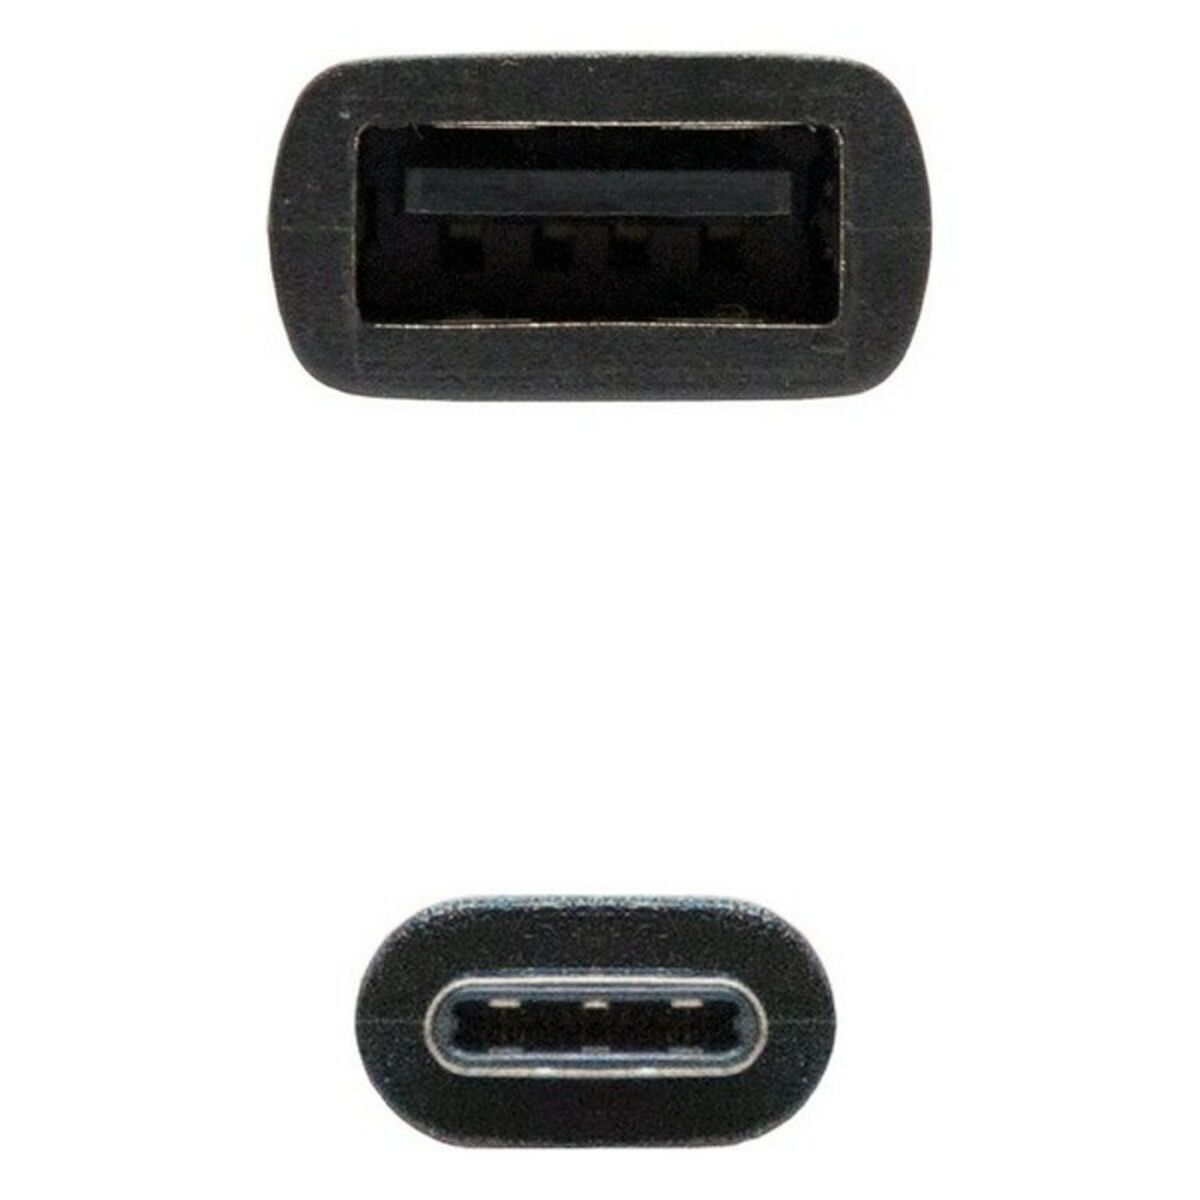 10.01.2400, USB 2.0-Kabel NANOCABLE